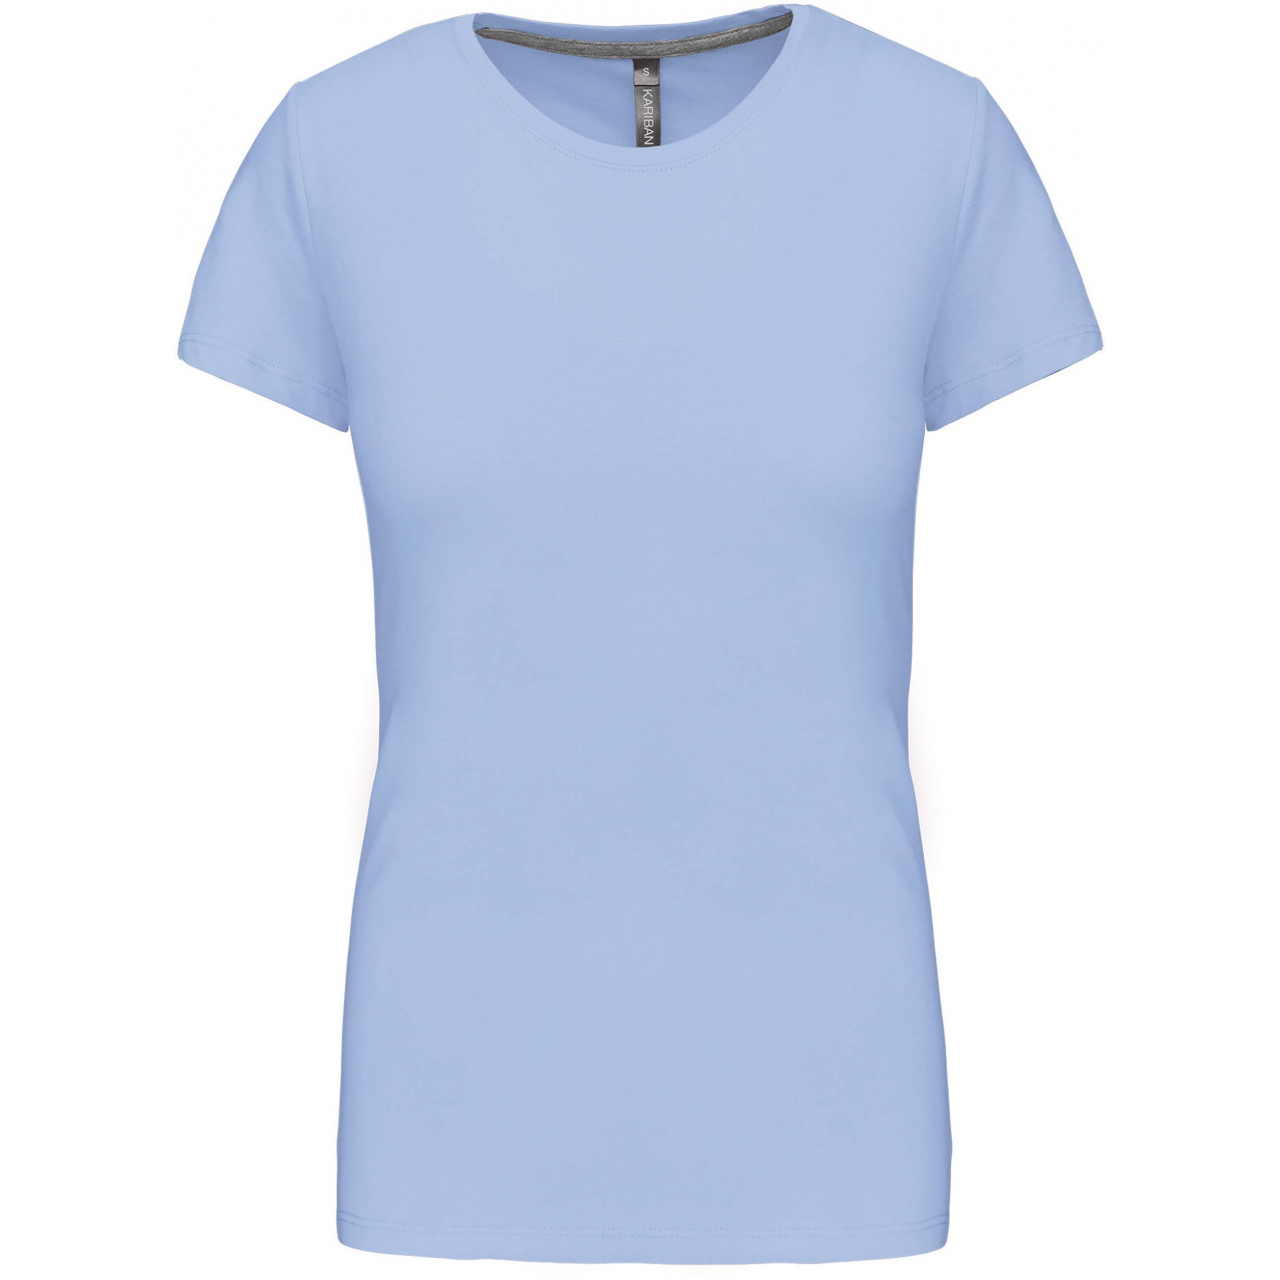 Dámské tričko Kariban s krátkým rukávem - světle modré, M